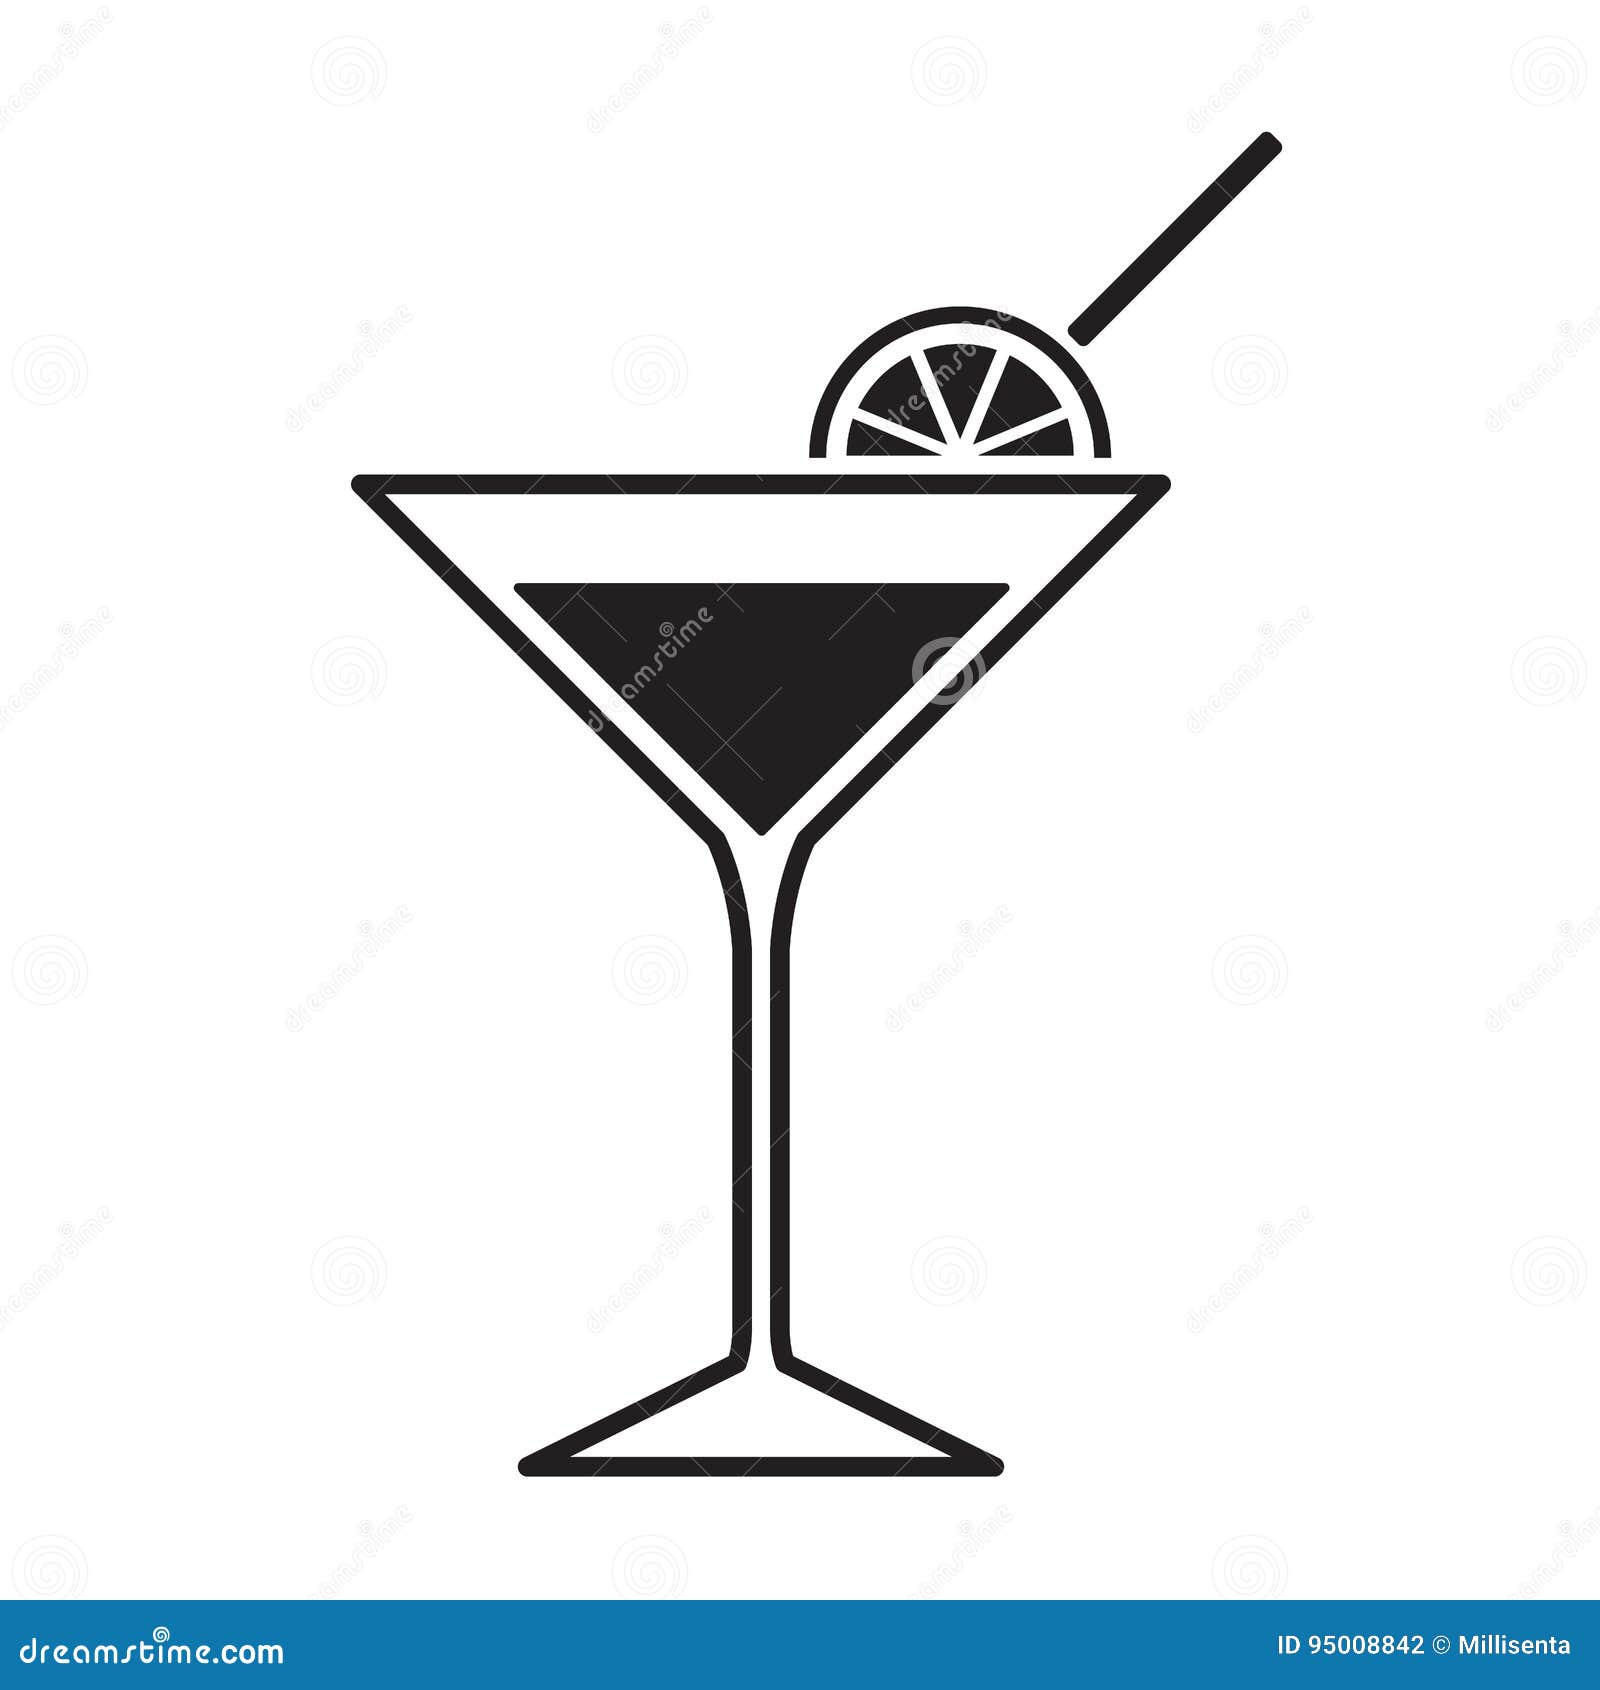 martini glass icon